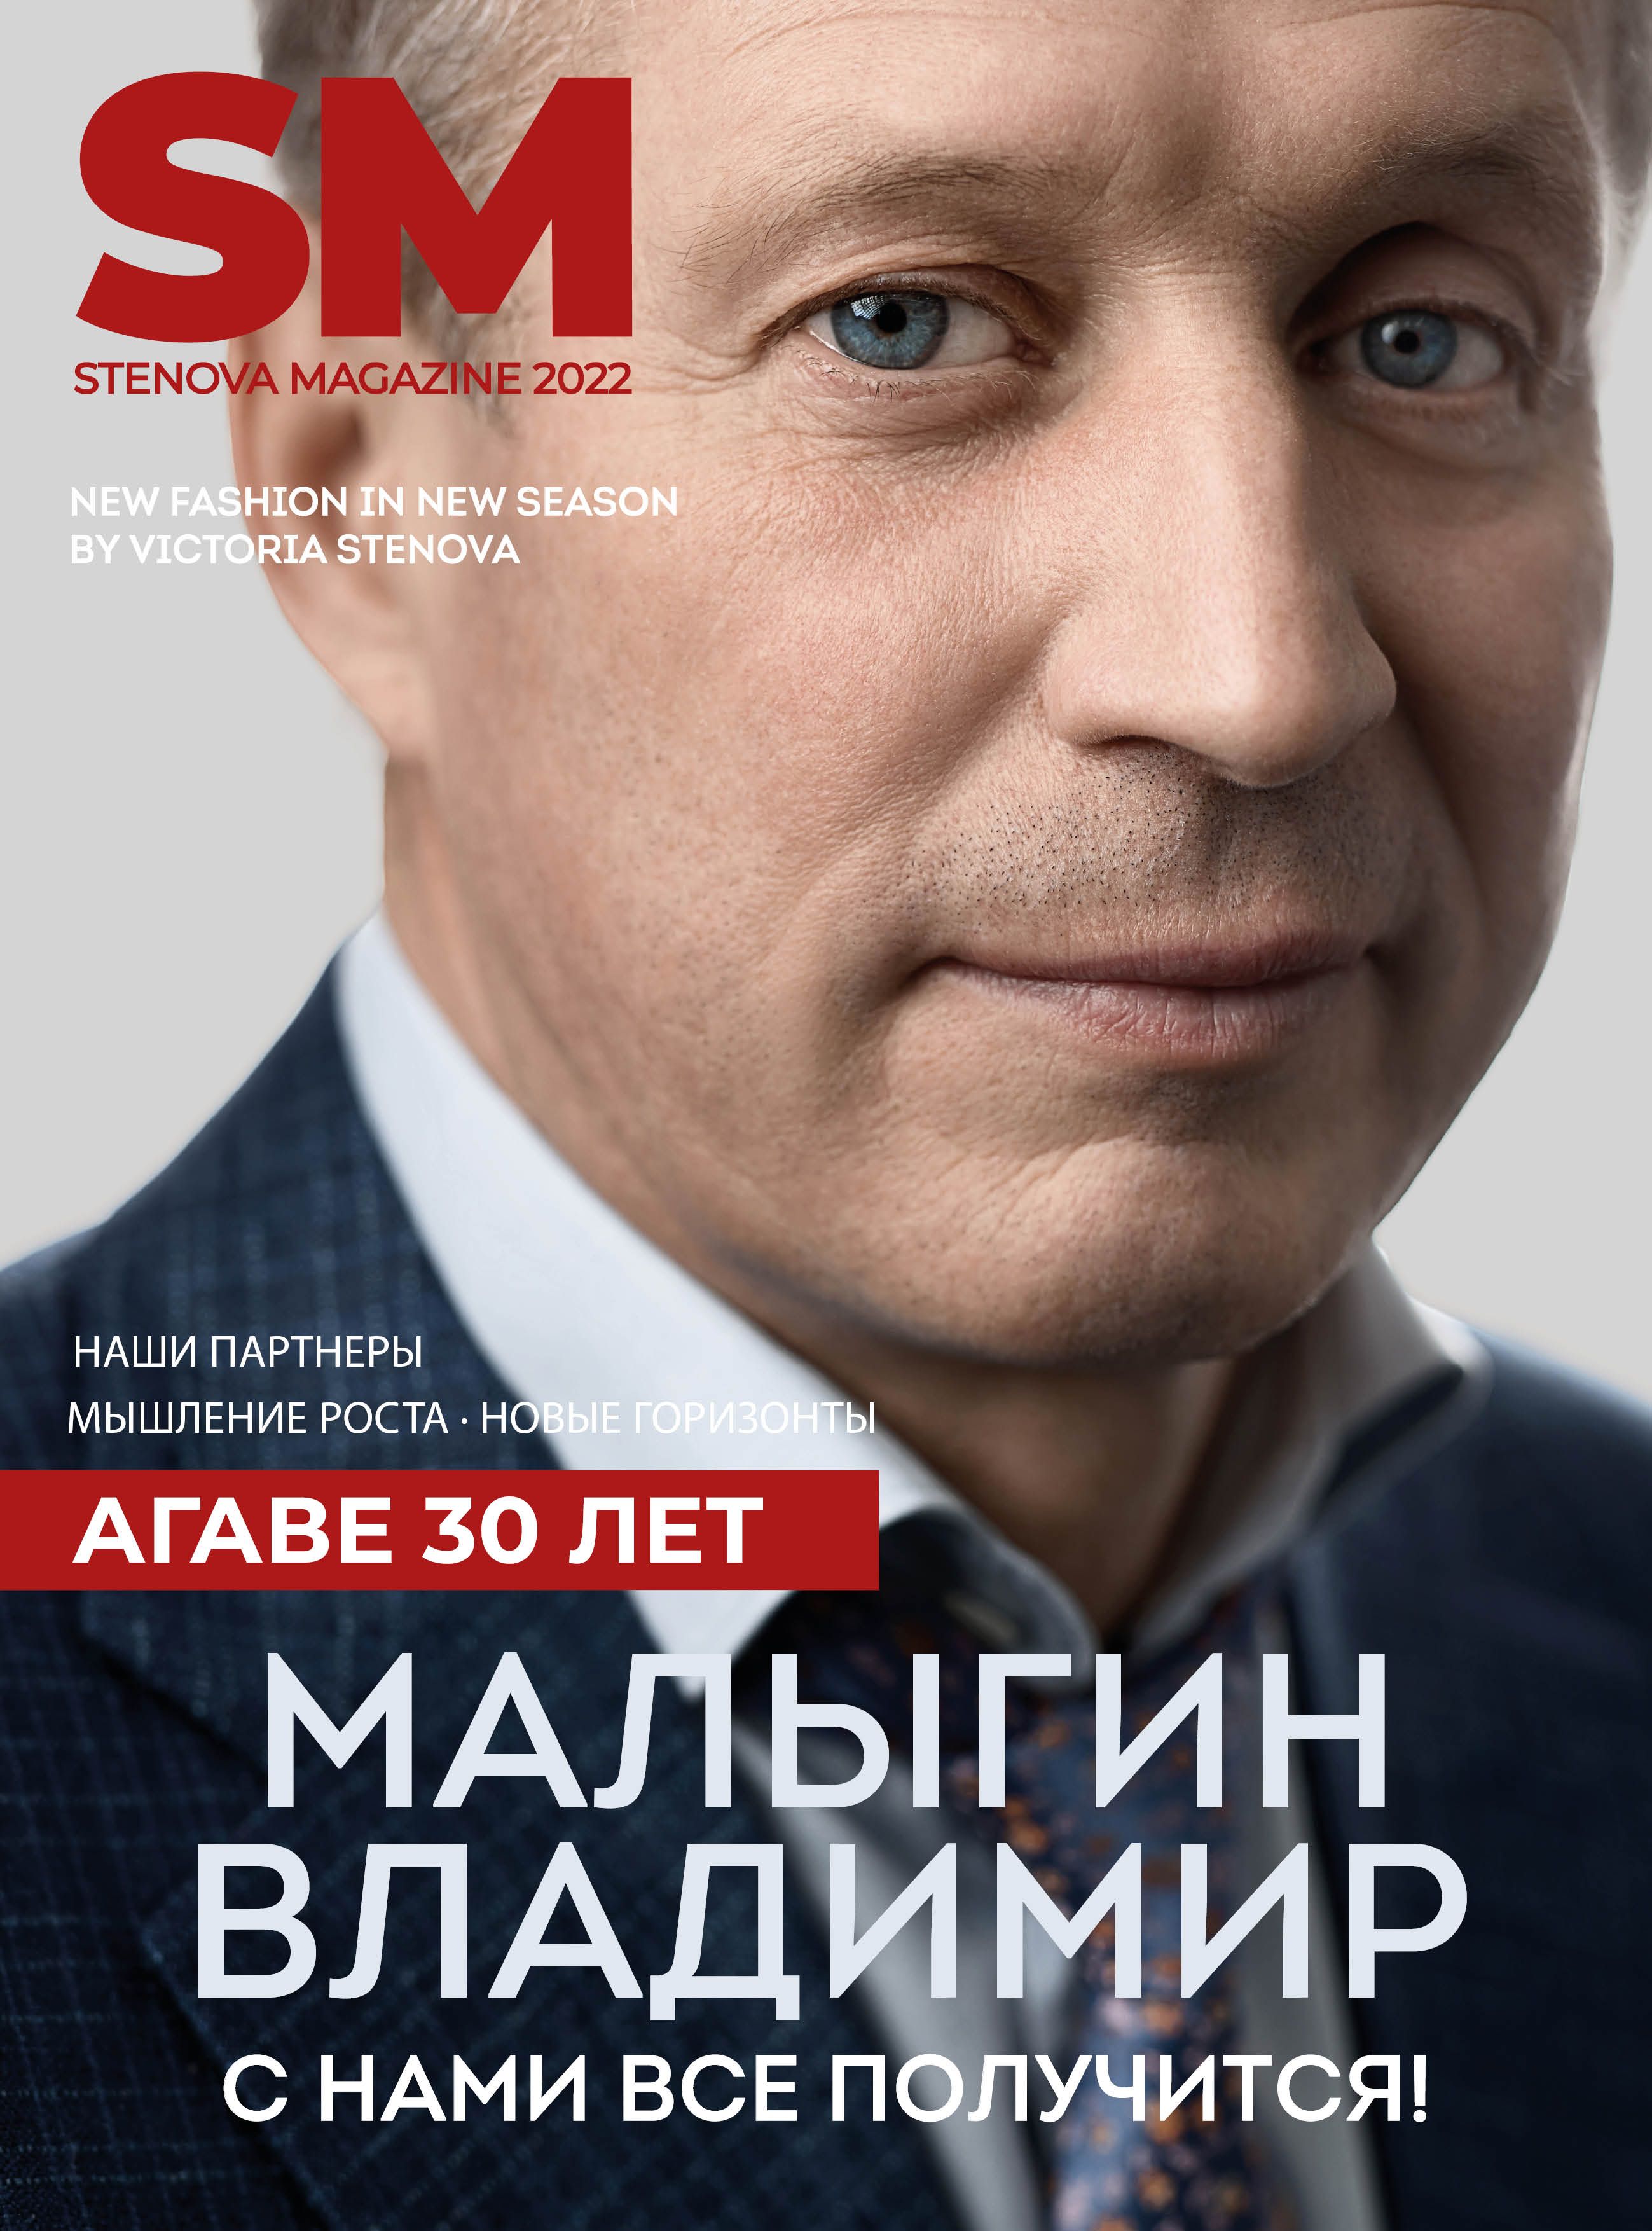 Stenova Magazine 2022